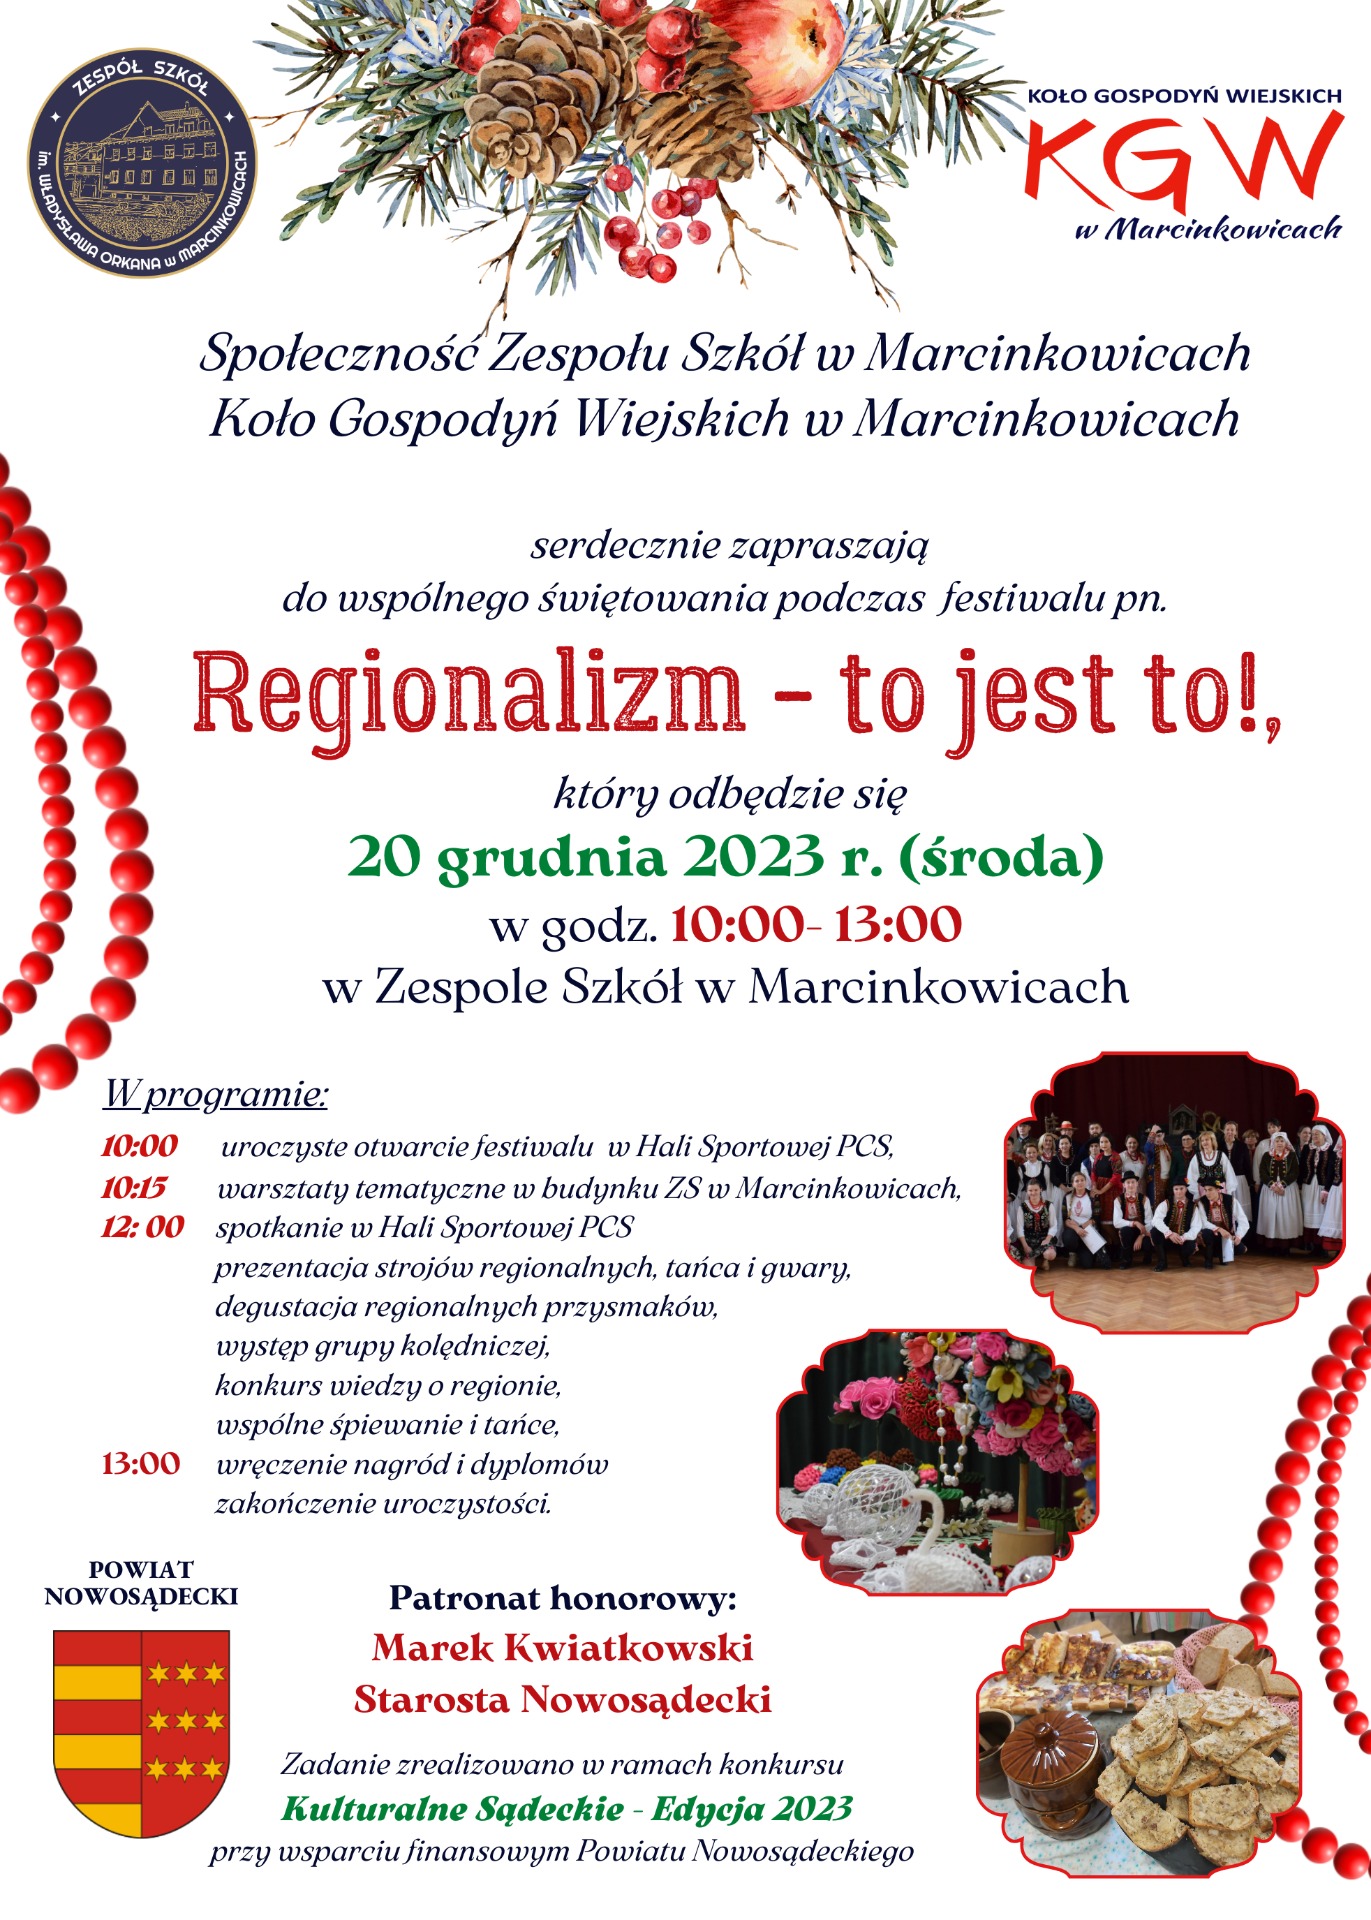 Festiwal "Regionalizm - to jest to!" - Obrazek 1